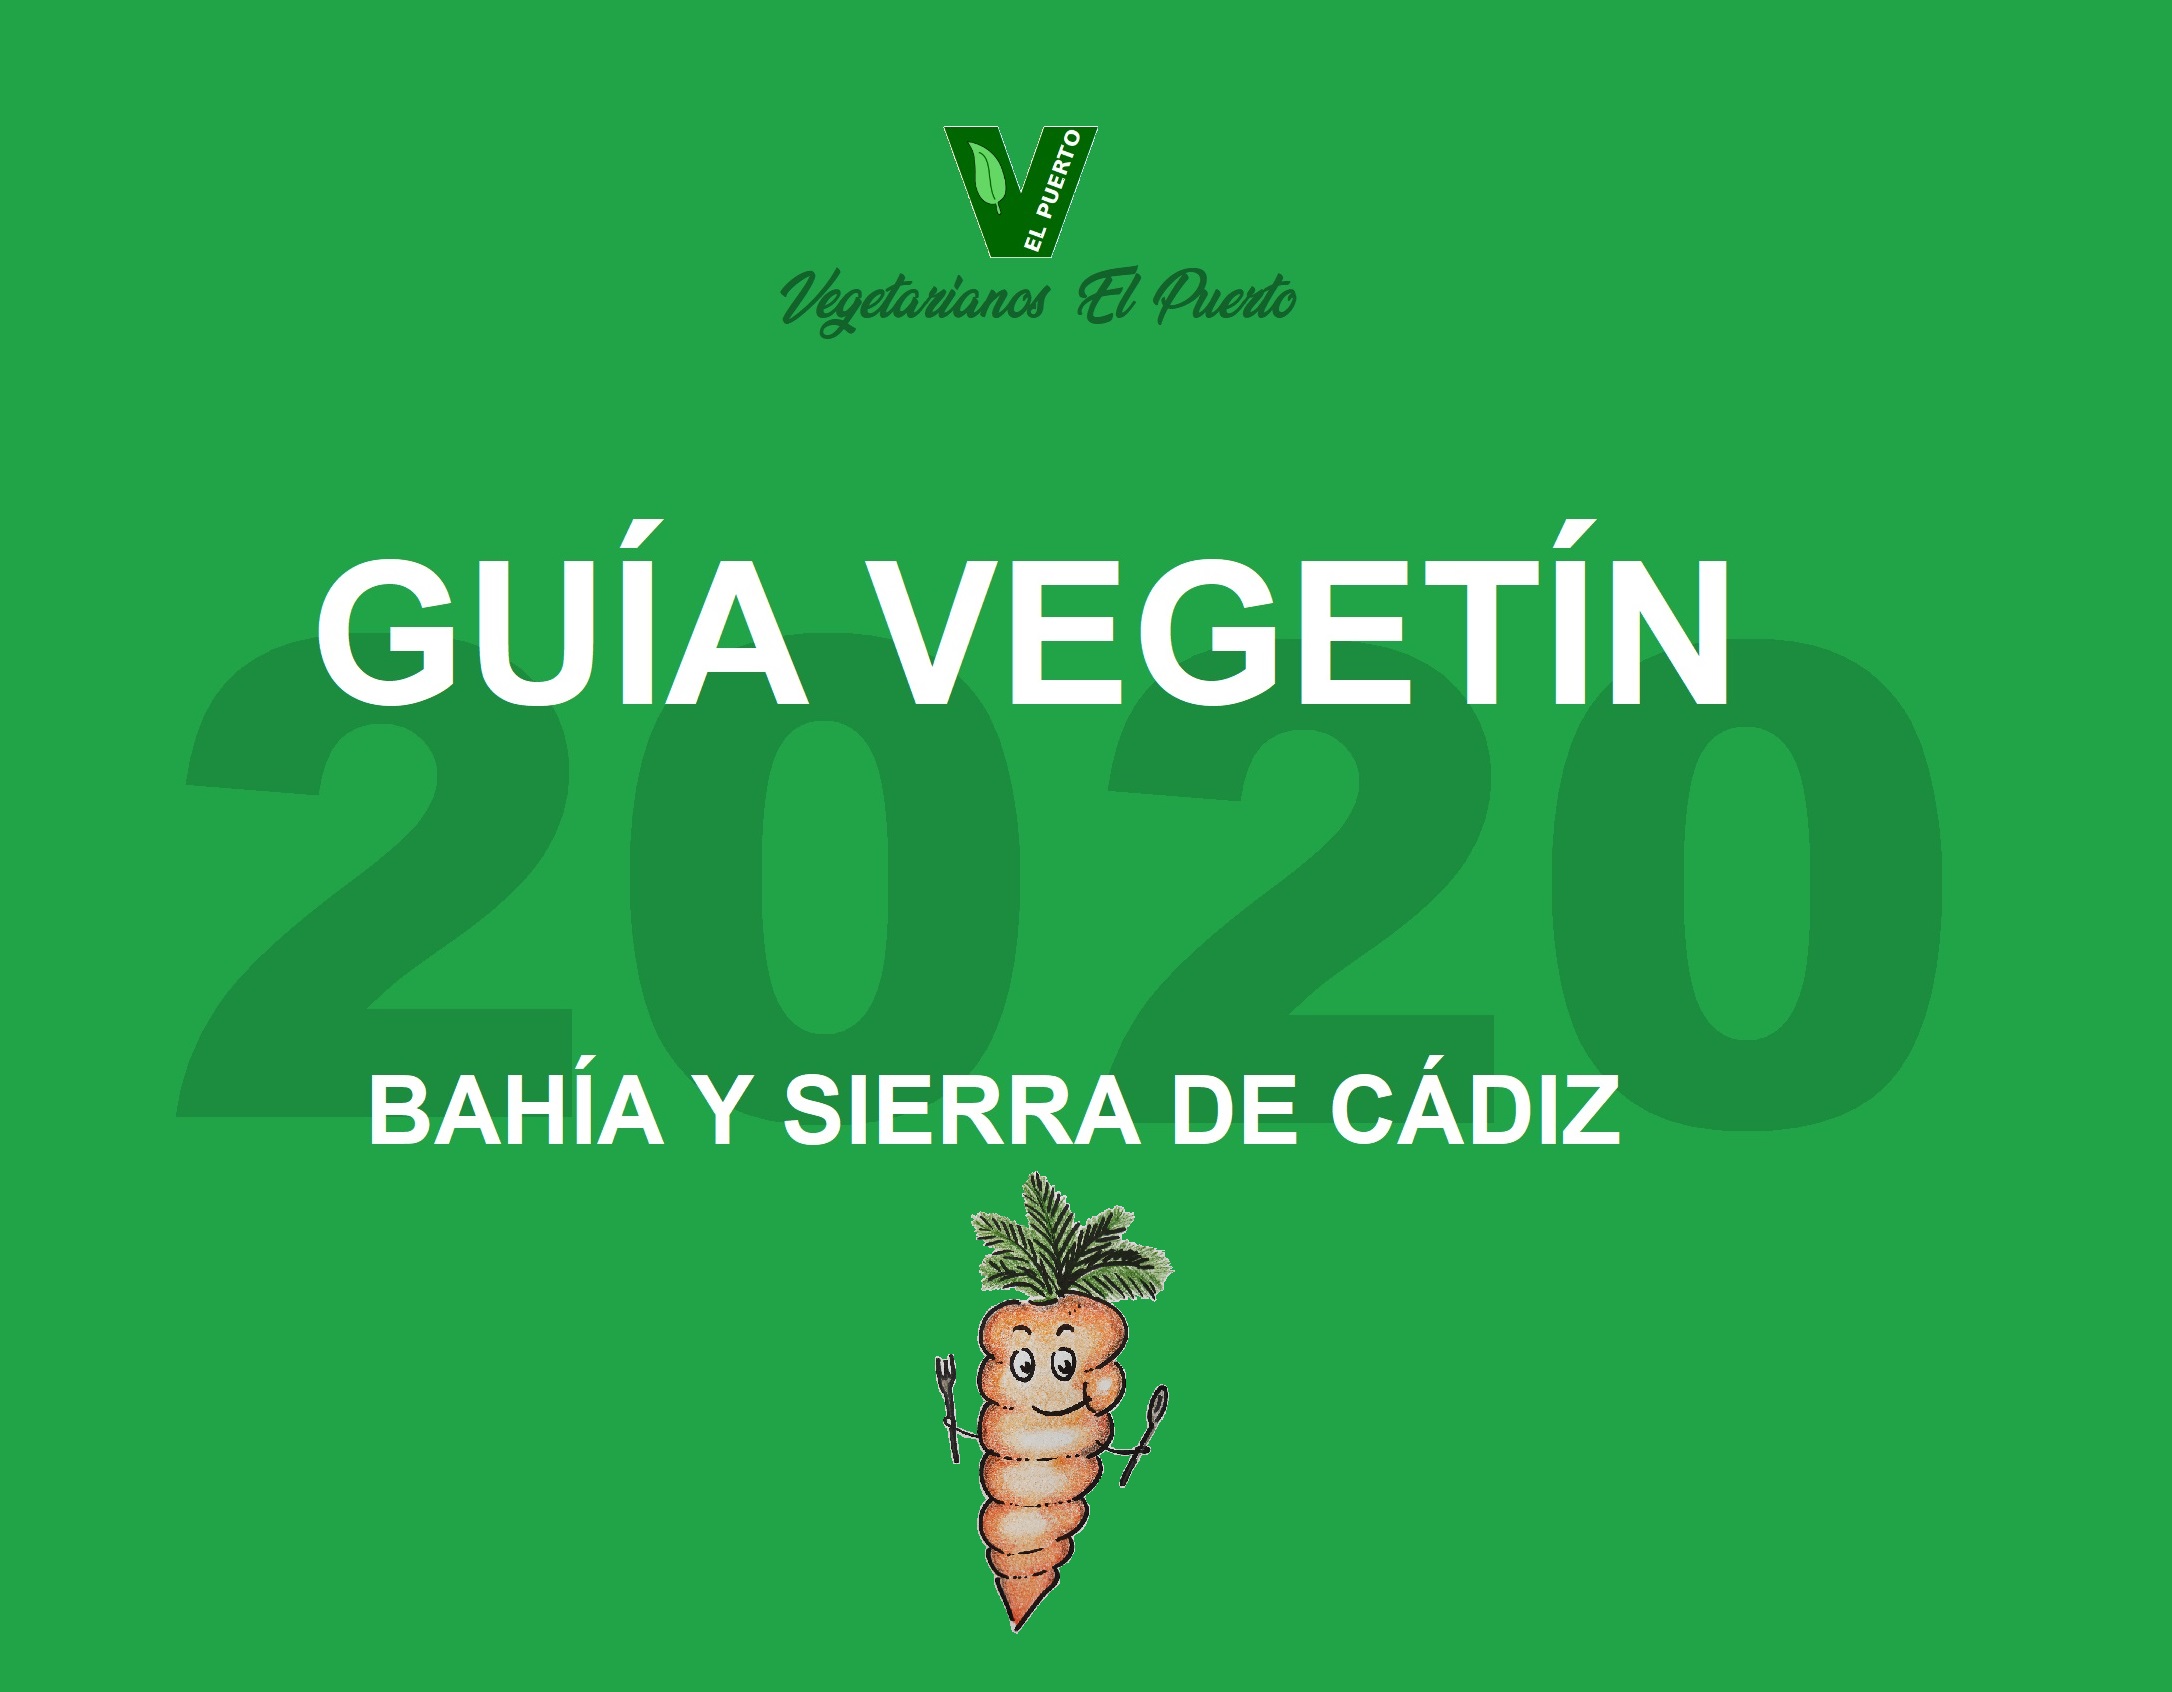 La Guía Vegetín 2000 – el nuevo logotipo ha llegado!